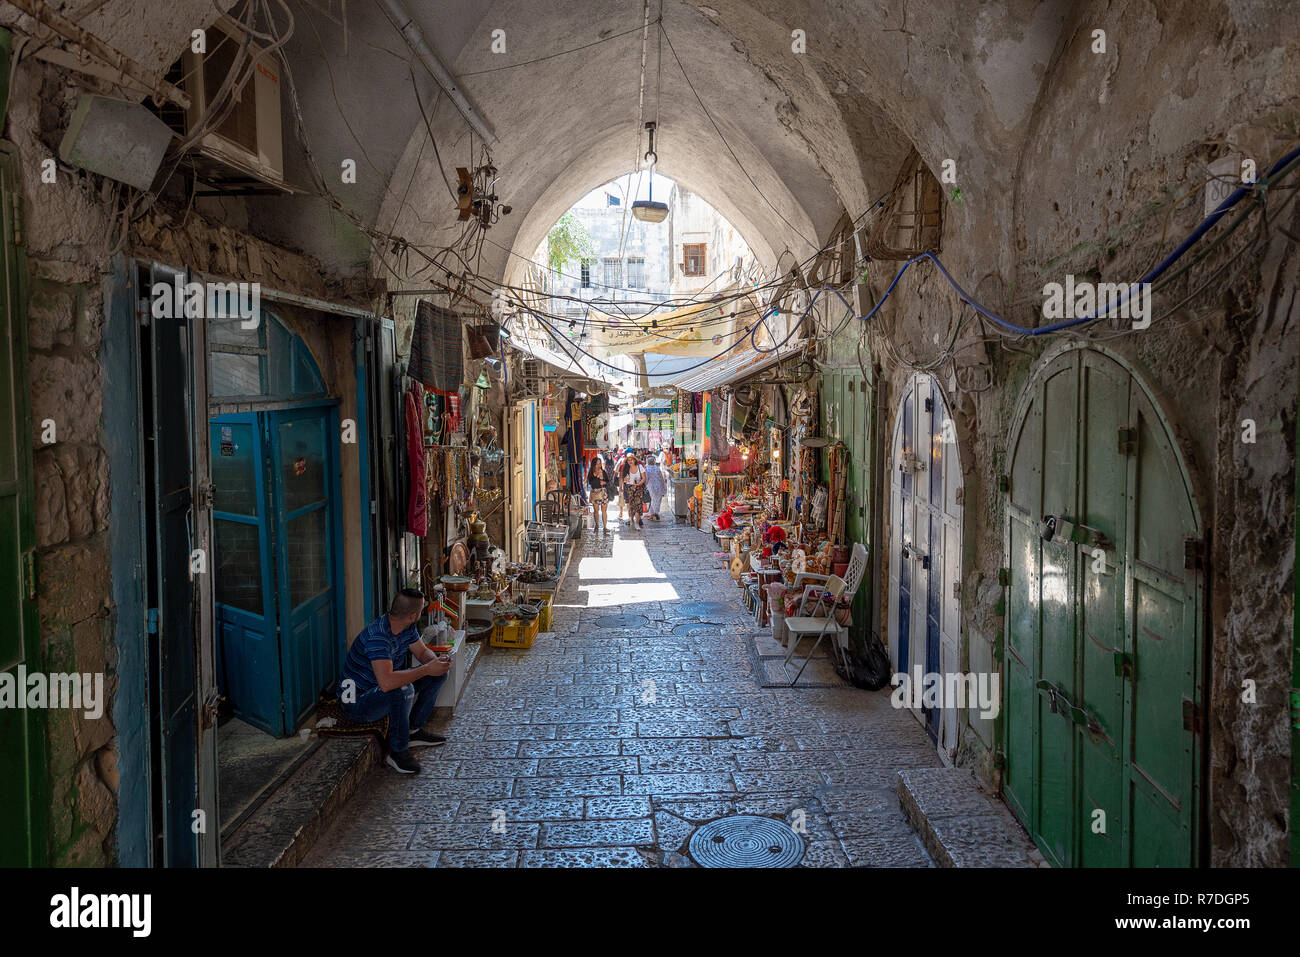 Gerusalemme, Israele - 10 settembre 2020. Persone che camminano nel quartiere musulmano della città vecchia di Gerusalemme, Israele. Foto Stock